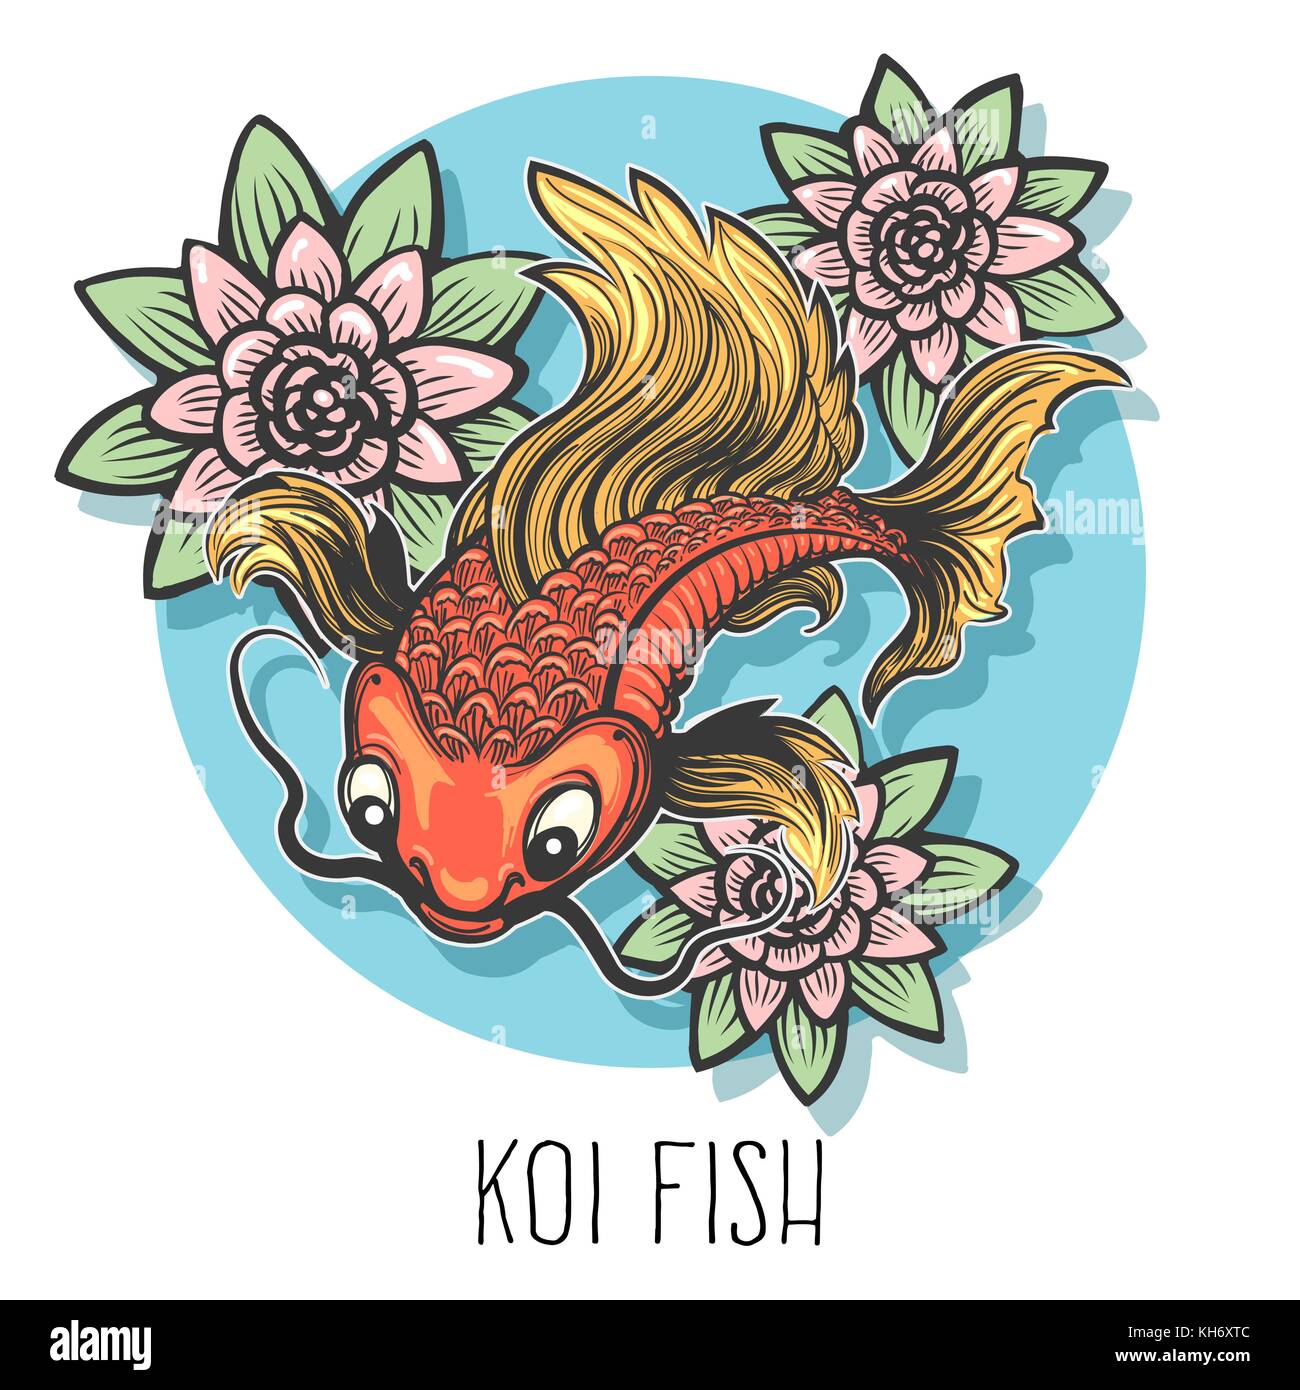 Disegnata a mano carp pesce con fiori di loto disegnato in stile tatuaggio isolato su bianco. illustrazione vettoriale. Illustrazione Vettoriale